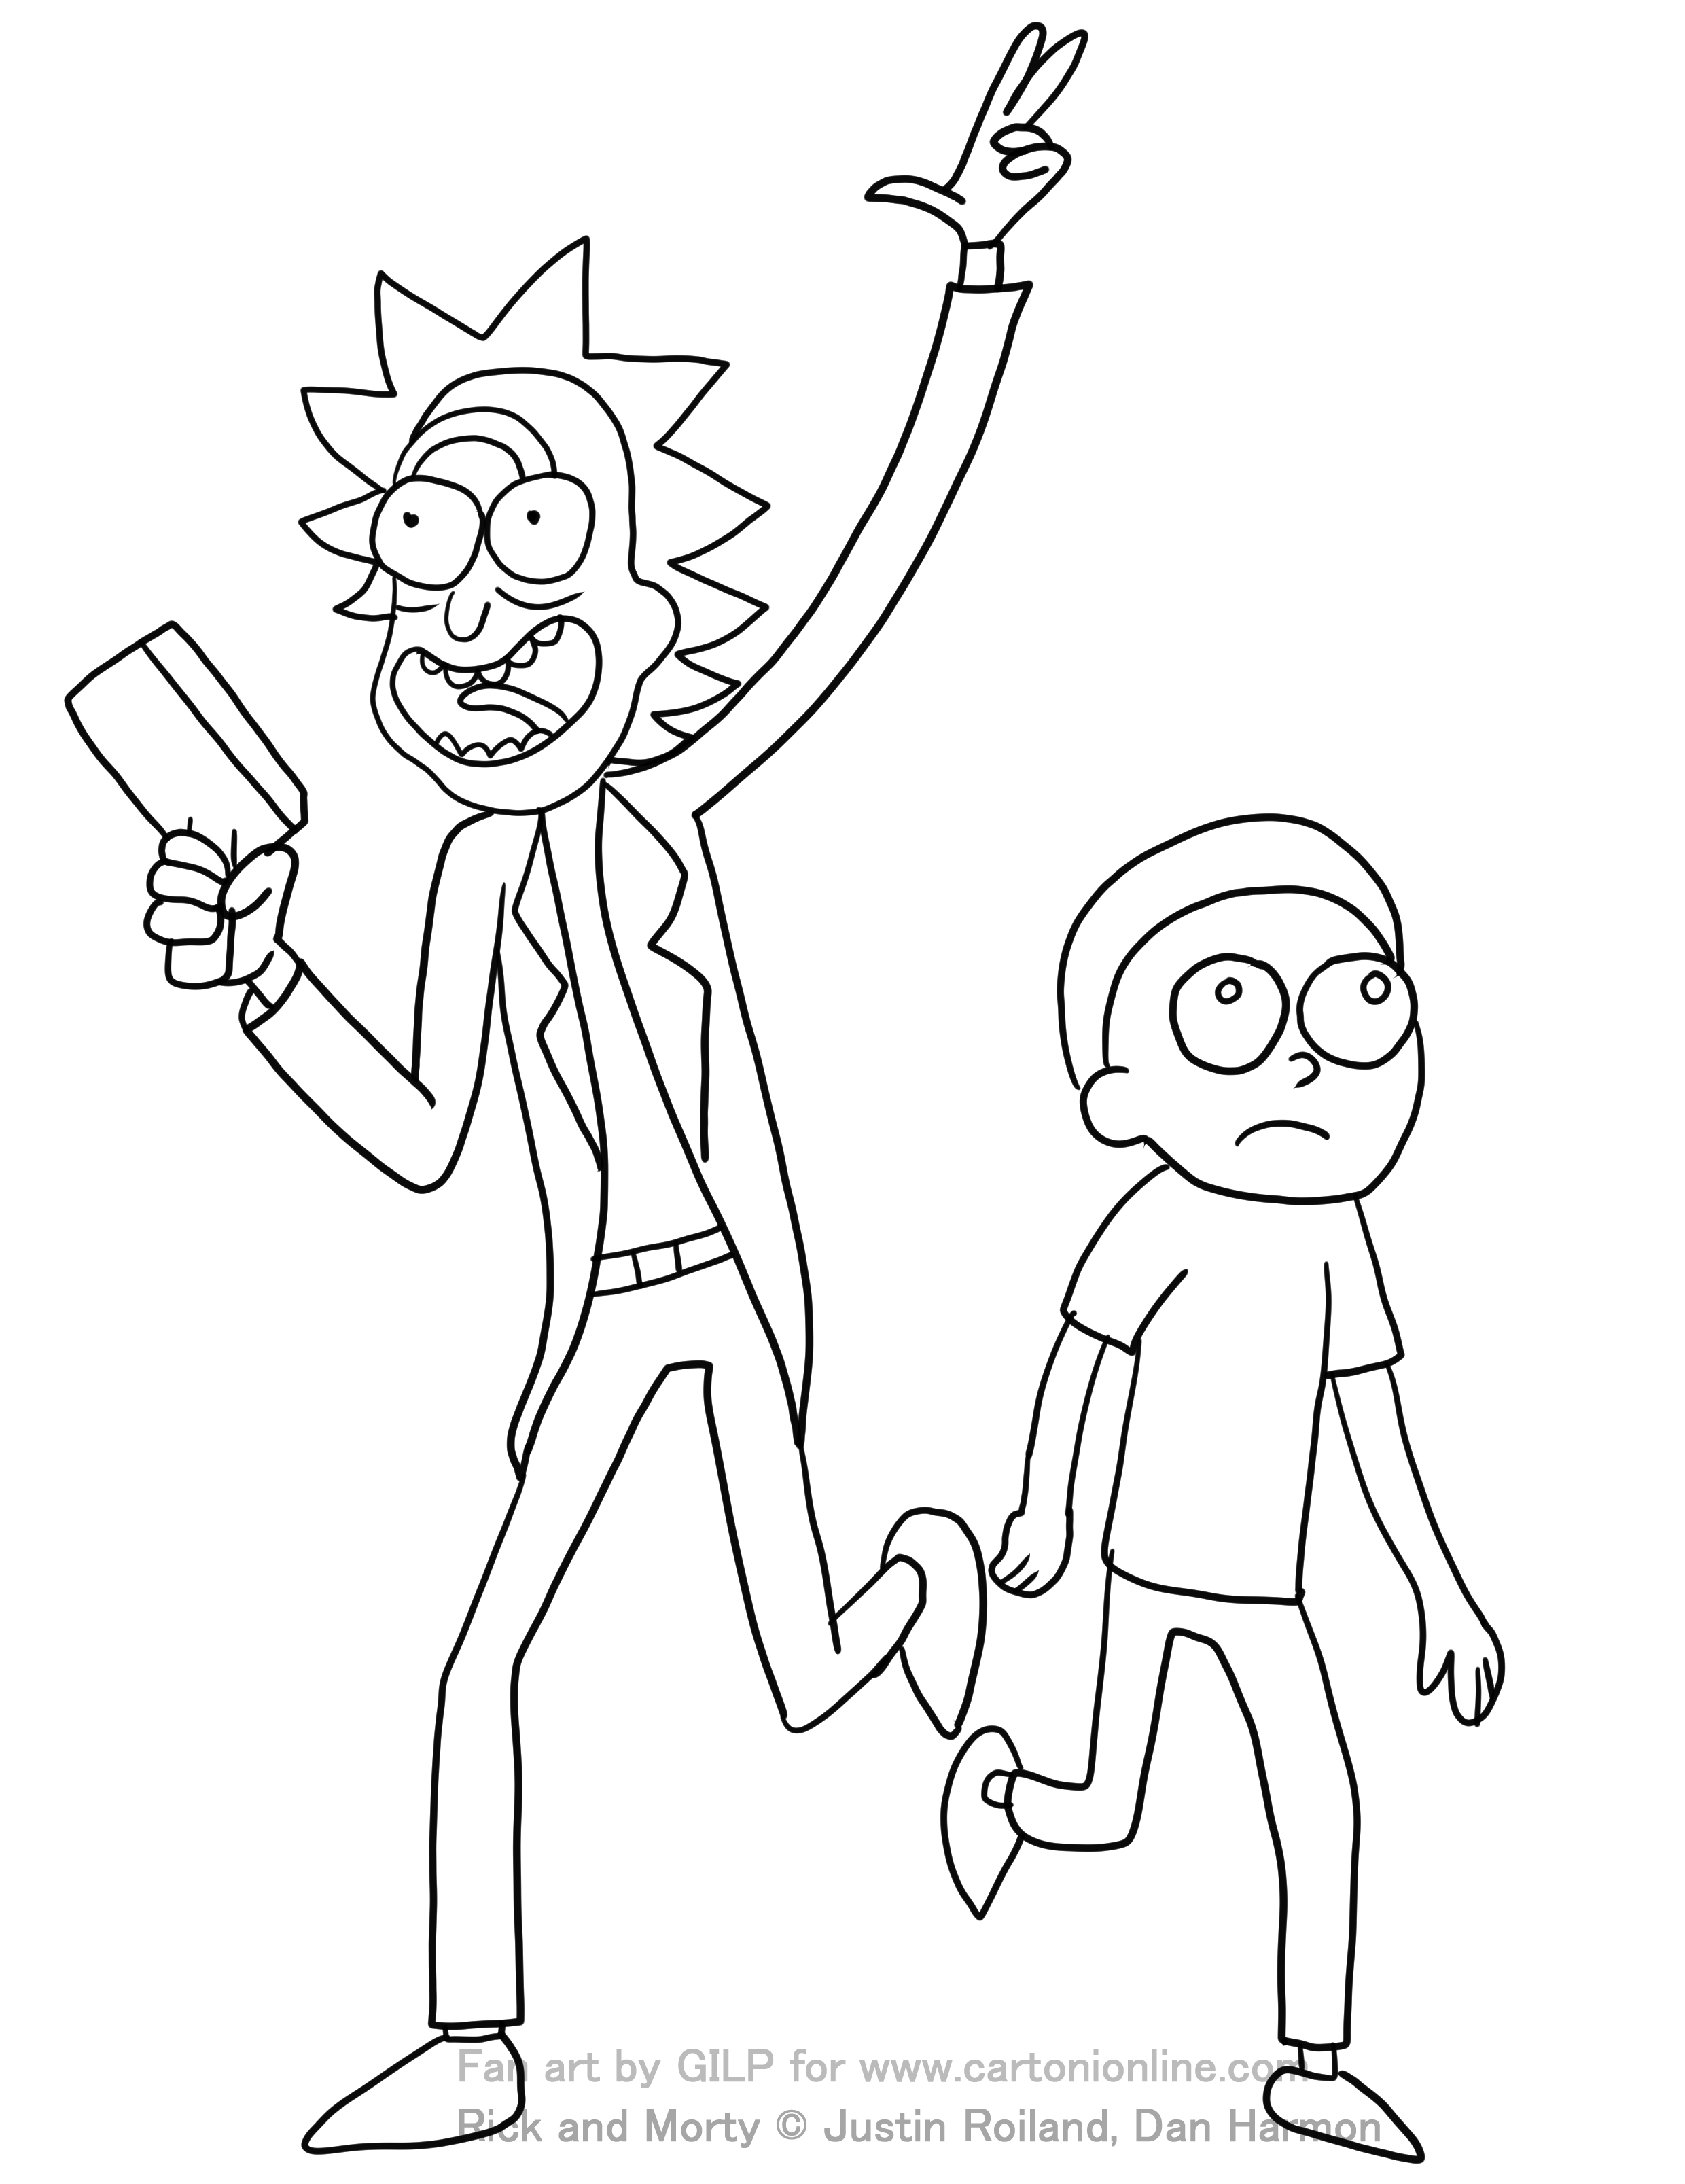 Rick and Morty 02 från Rick and Morty för att trycka och måla